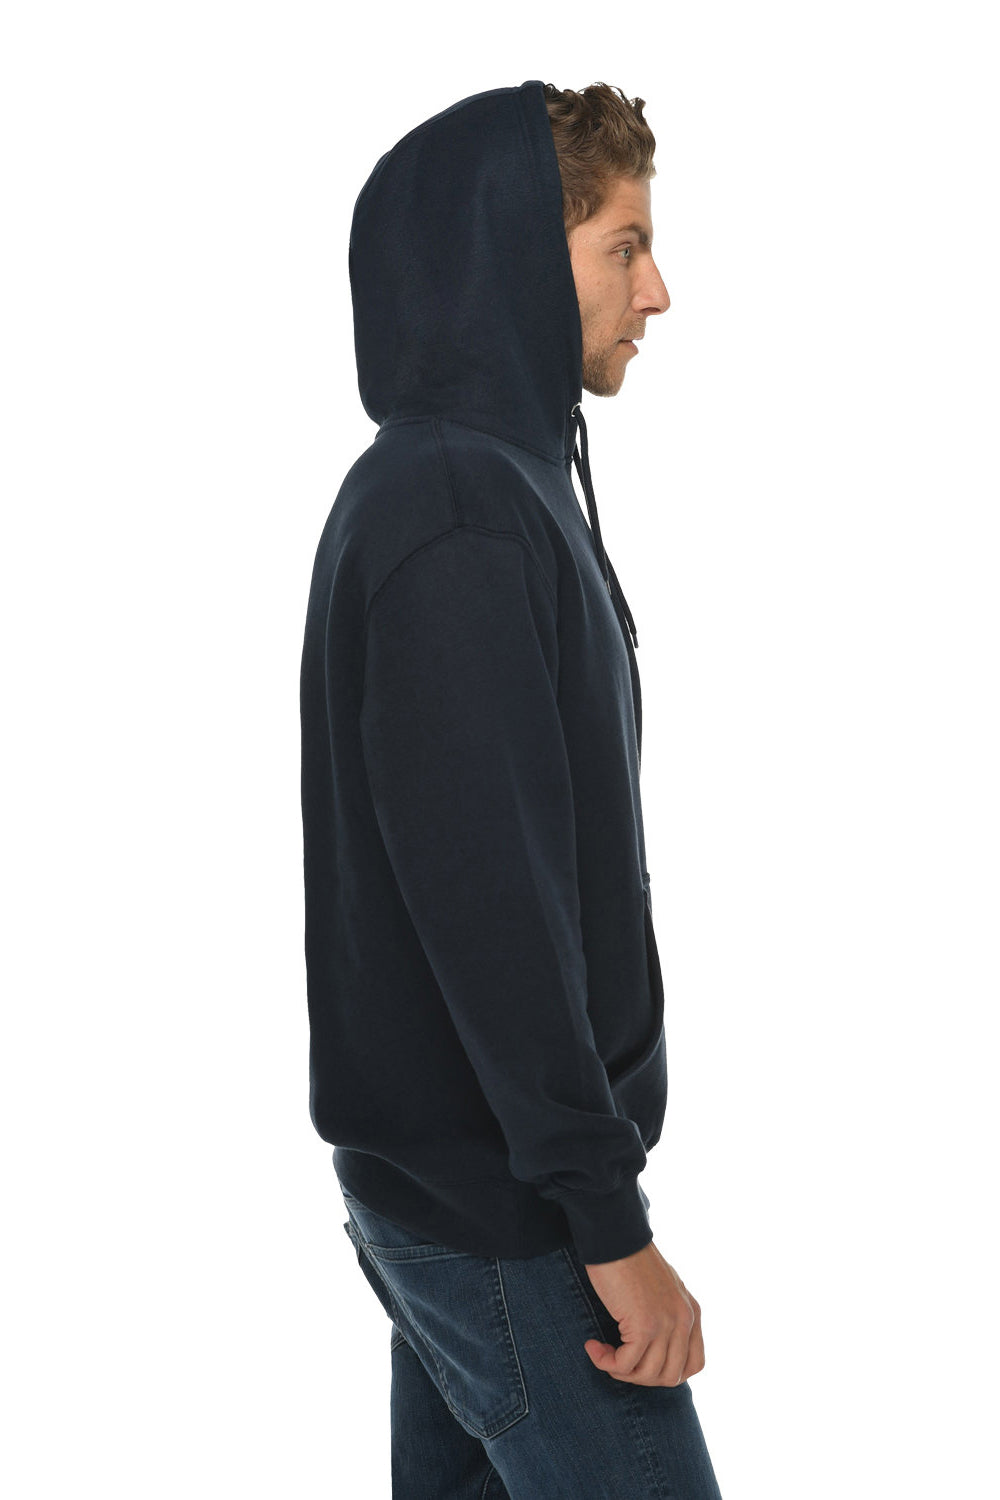 Lane Seven LS14001 Mens Premium Hooded Sweatshirt Hoodie Navy Blue Side